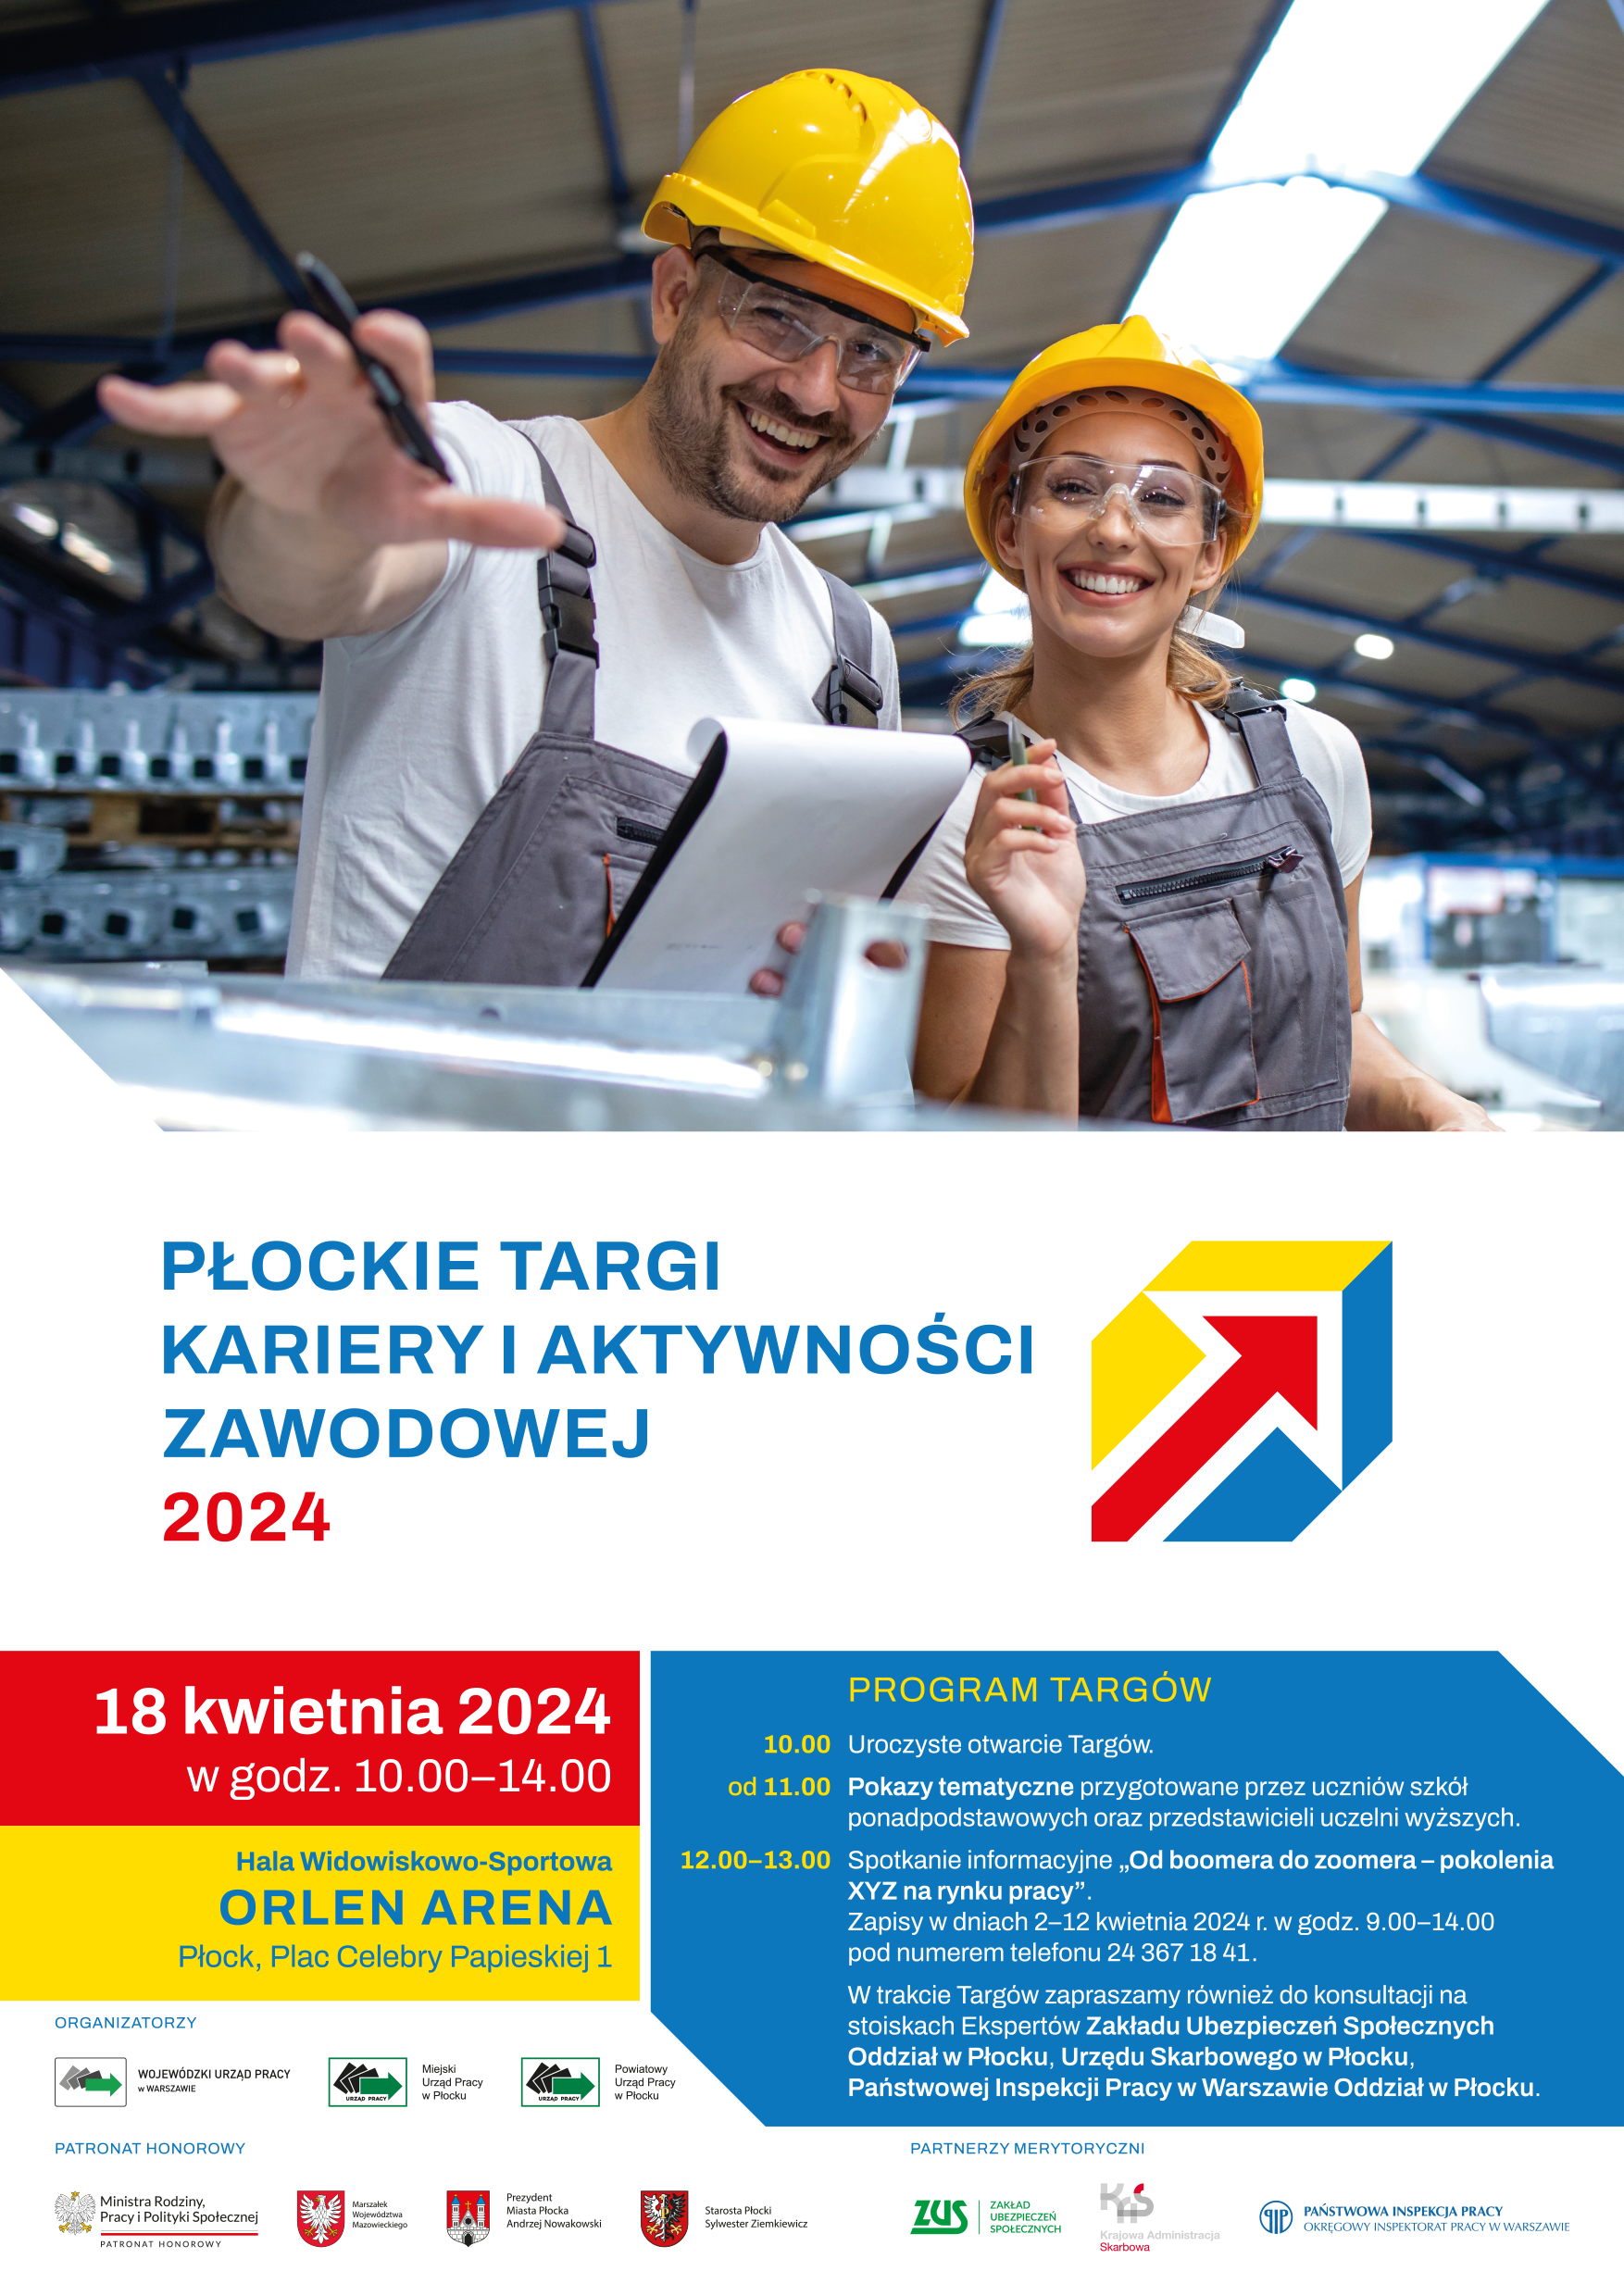 Plakat promujący Płockie Targi Kariery i Aktywności Zawodowej 2024